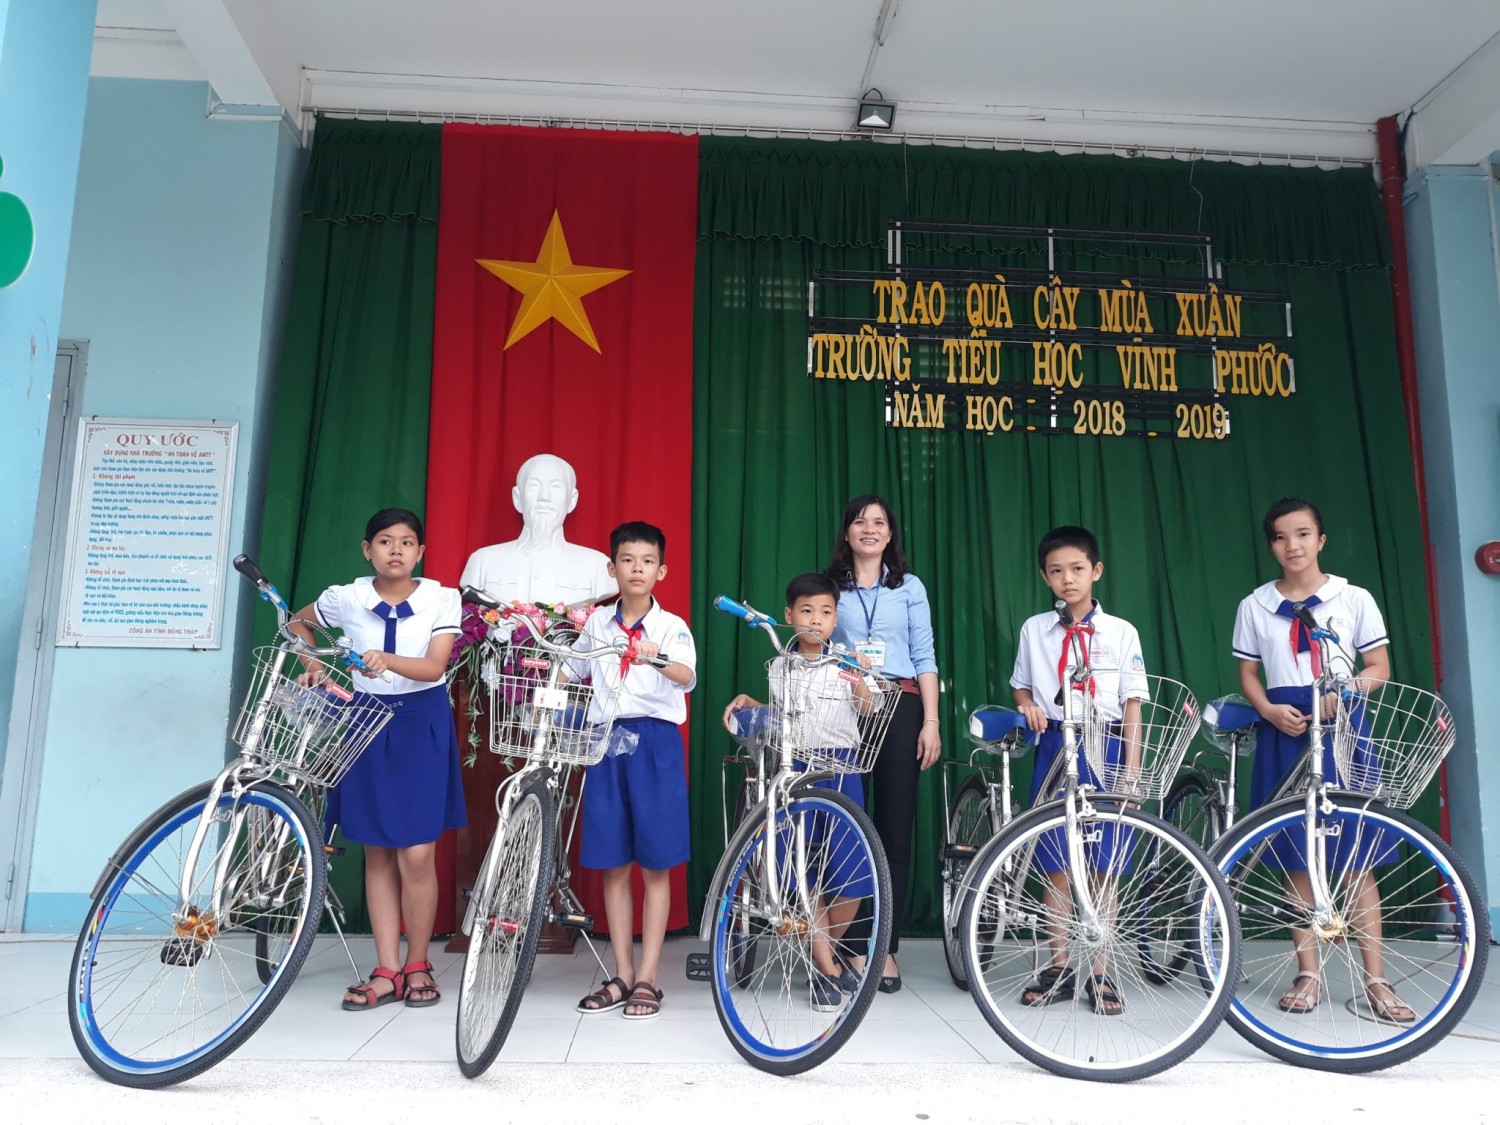 Trường Tiểu học Vĩnh Phước trao quà cây mùa xuân cho học sinh nghèo và học sinh khó khăn của trường